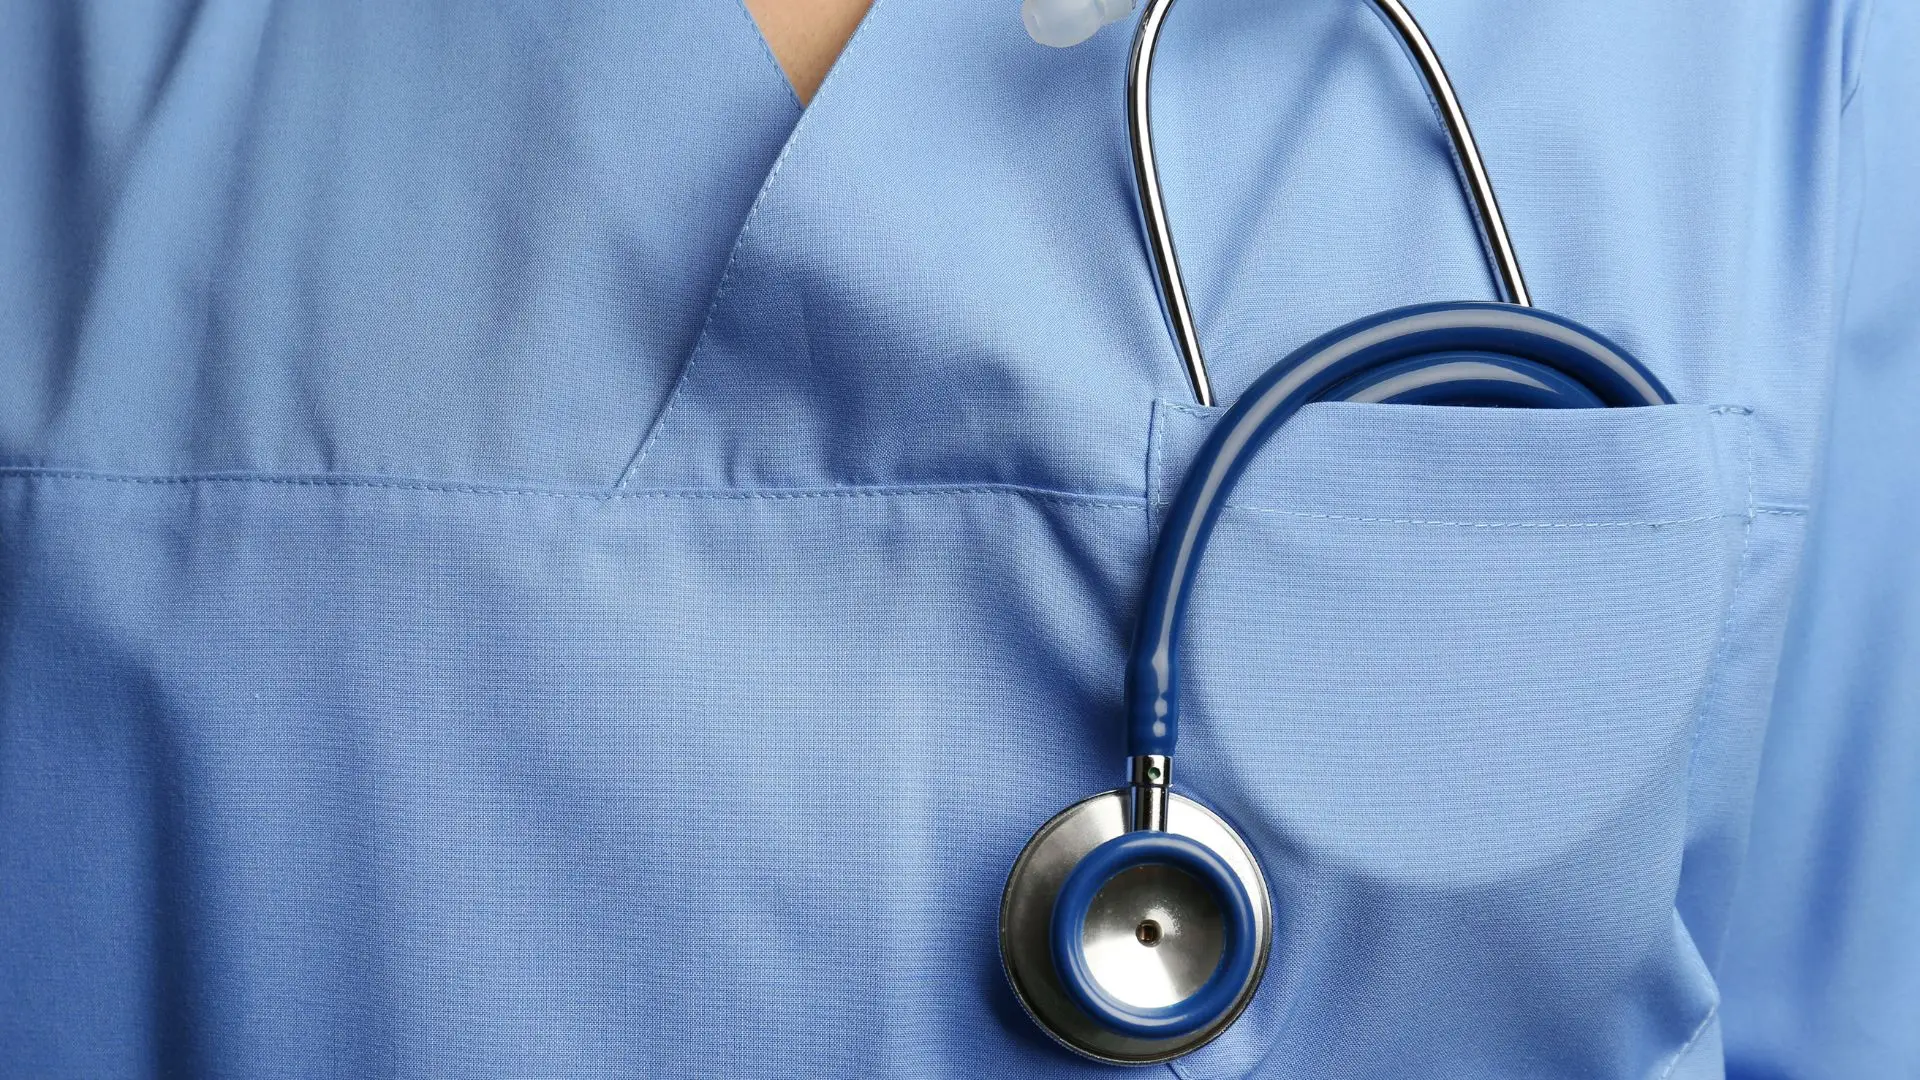 Sindicato dos Enfermeiros exige à nova ministra início de negociações